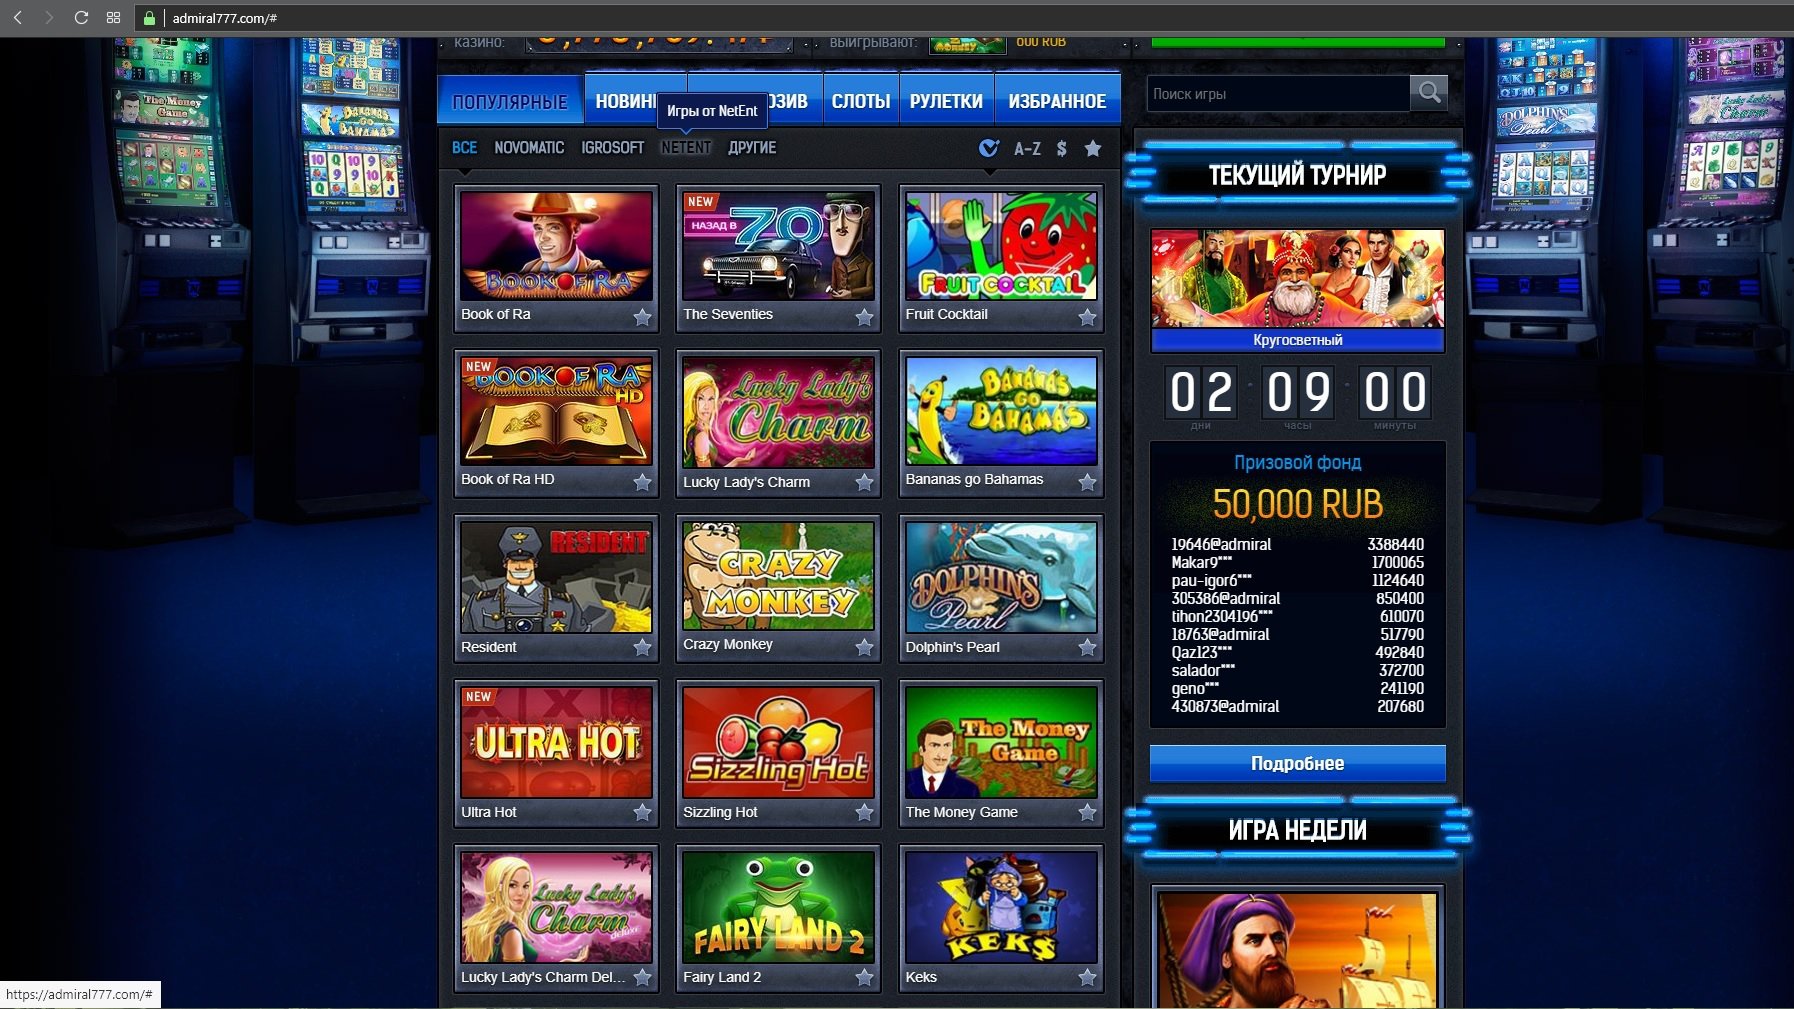 Адмирал слот бесплатные игровые автоматы в контакте ограбление казино смотреть онлайн в хорошем качестве